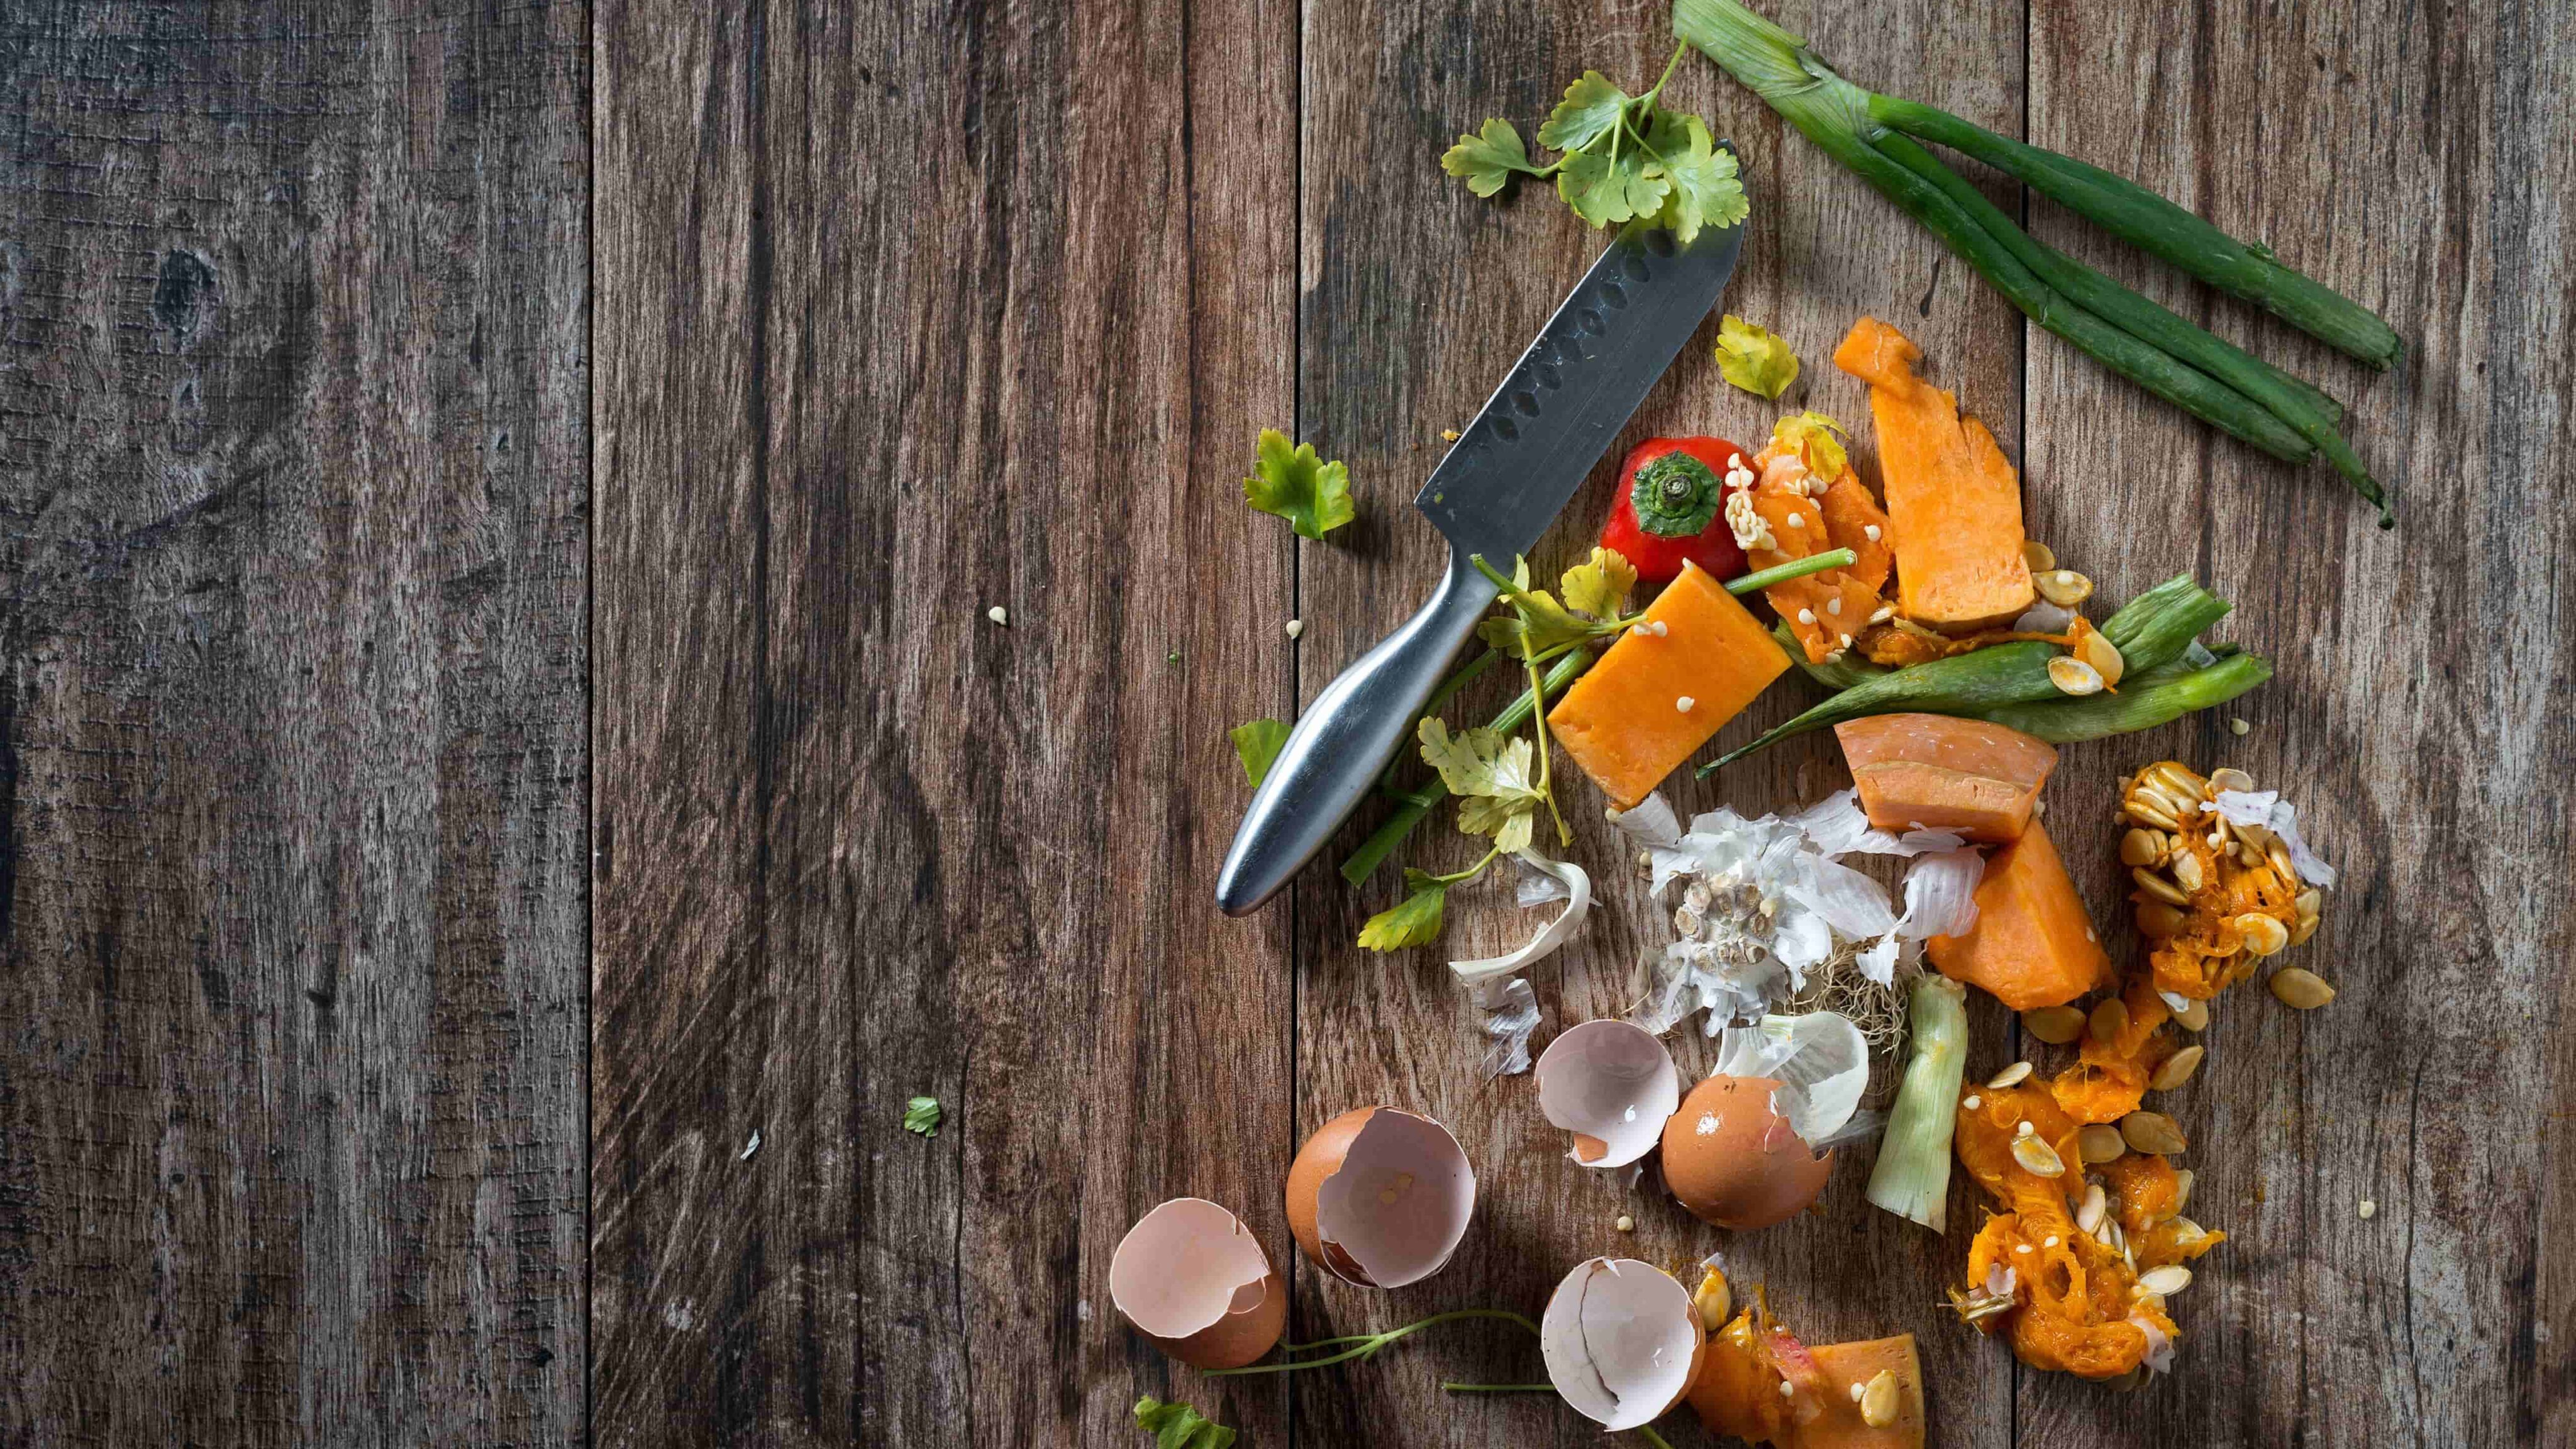 9 dicas para reduzir o desperdício alimentar